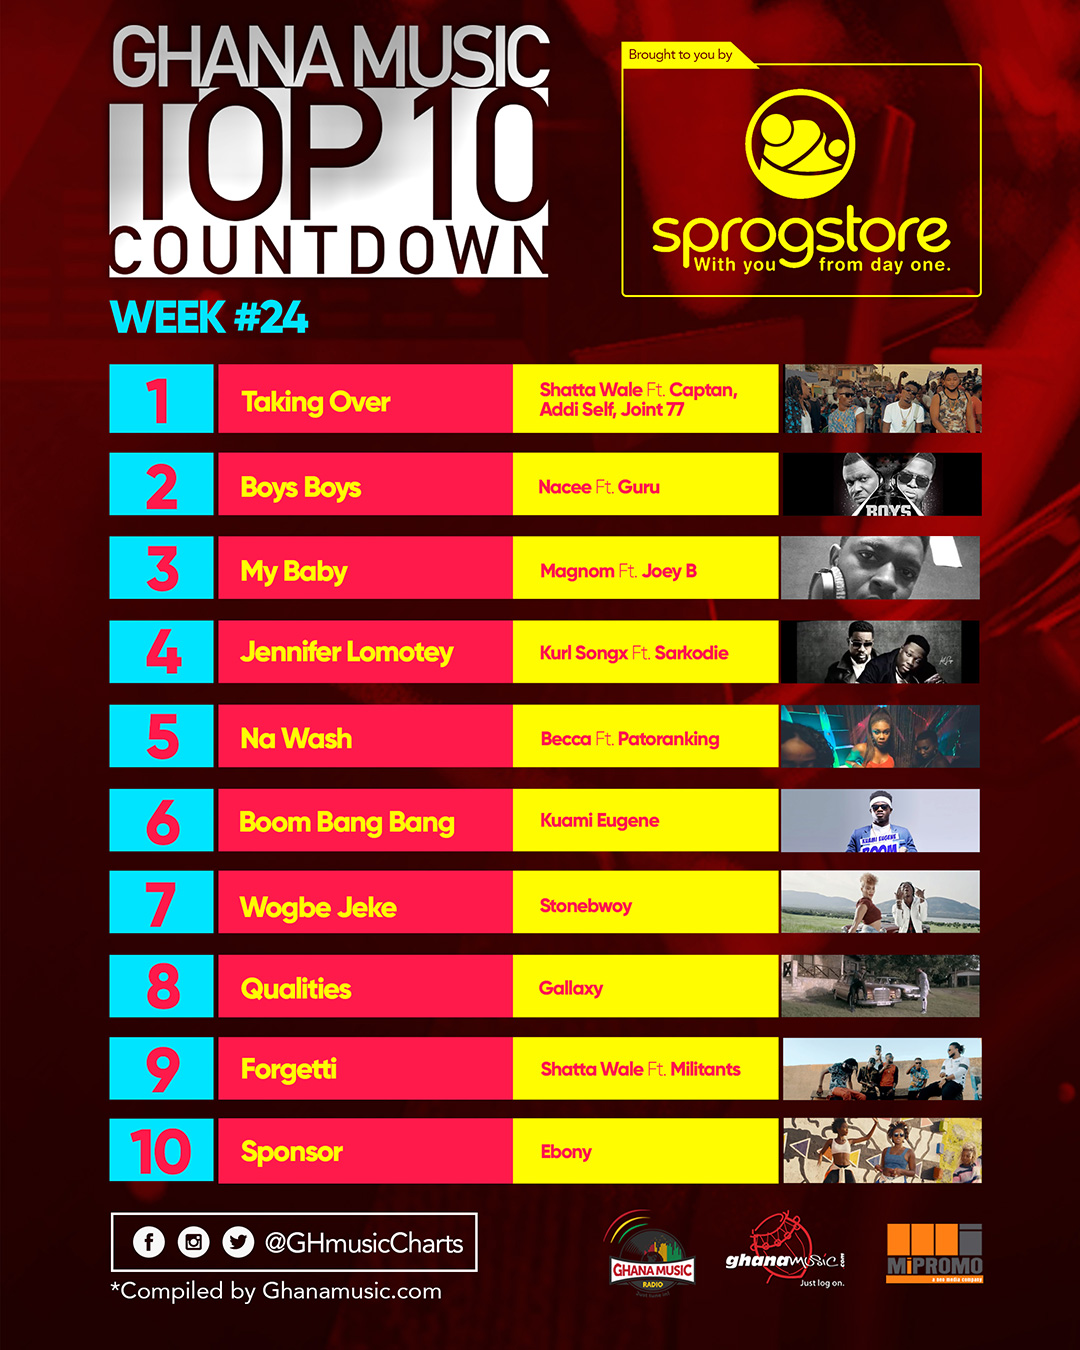 Week #24: Week ending Saturday, June 17th, 2017. Ghana Music Top 10 Countdown.